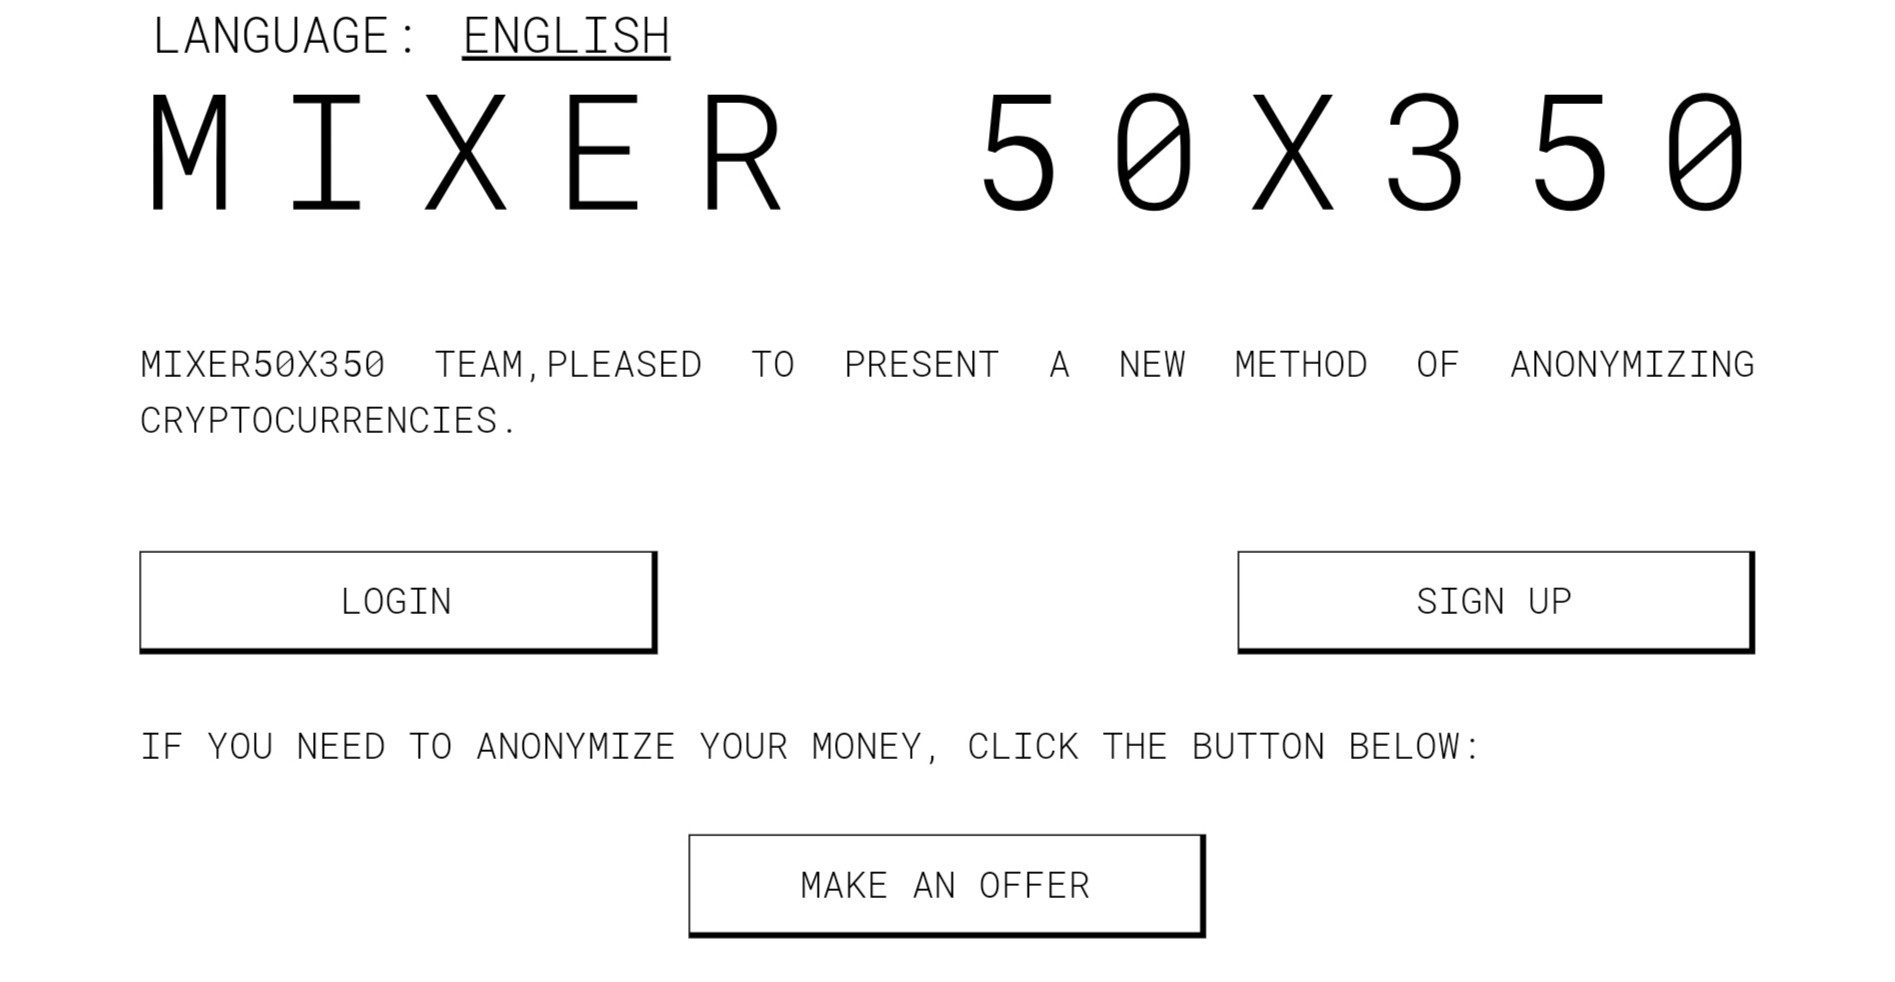 mixer50x350